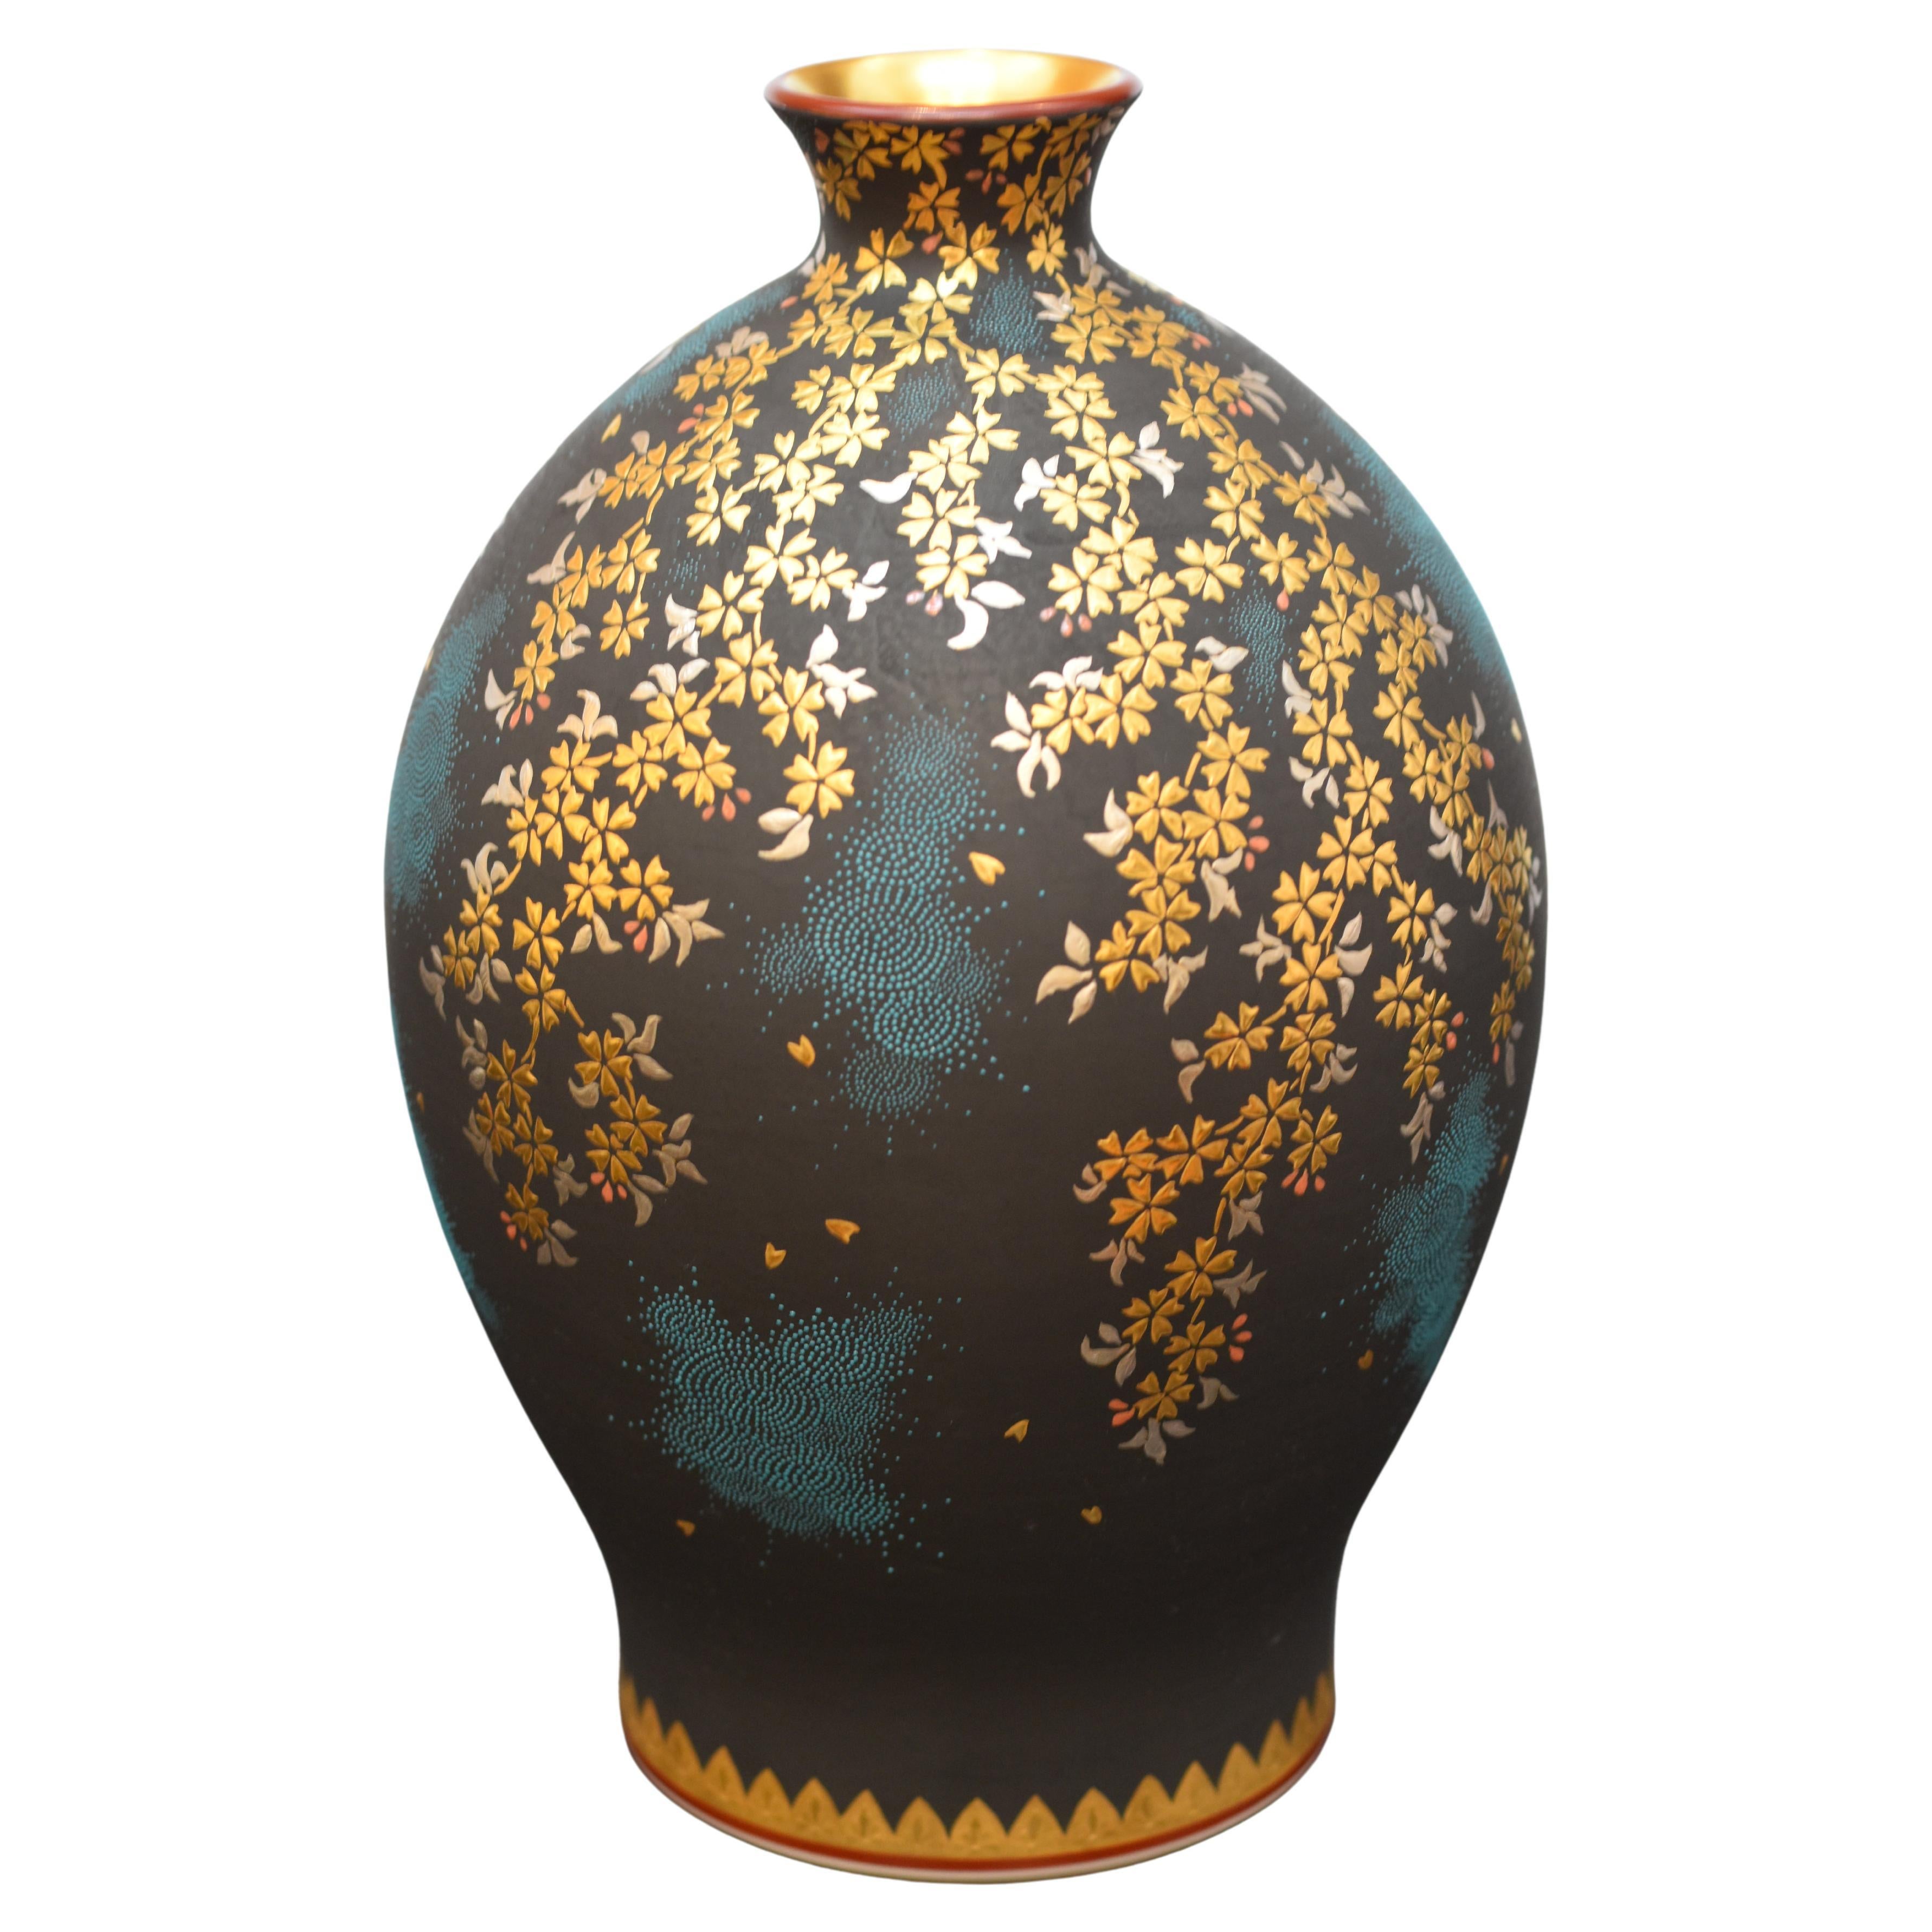 Japanese Contemporary Blue Black Platinum 36Gold Porcelain Vase by Master Artist For Sale